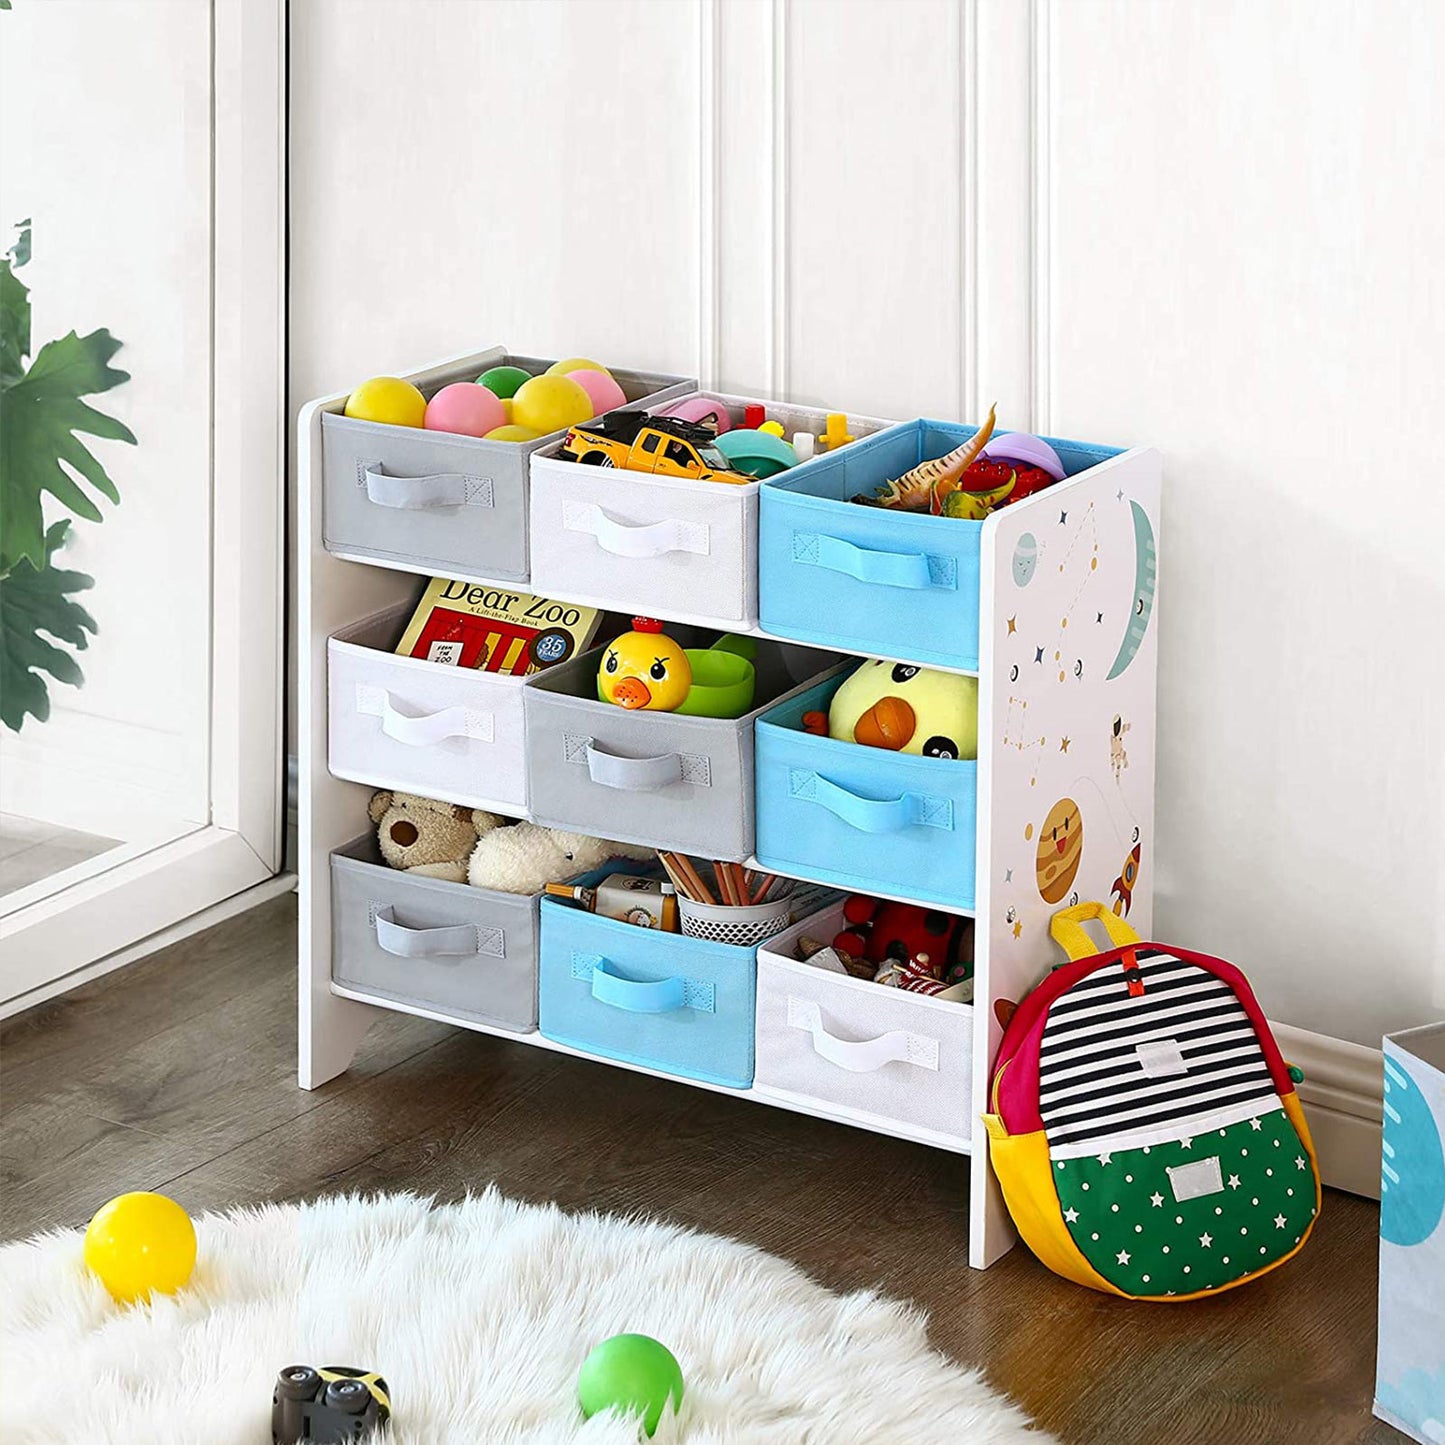 Songmics - Kinderzimmerregal, Spielzeug-Organizer, Bücherregal für Kinder, mit 9 Aufbewahrungsboxen aus Fleece, Kinderzimmer, Schule, Kindergarten